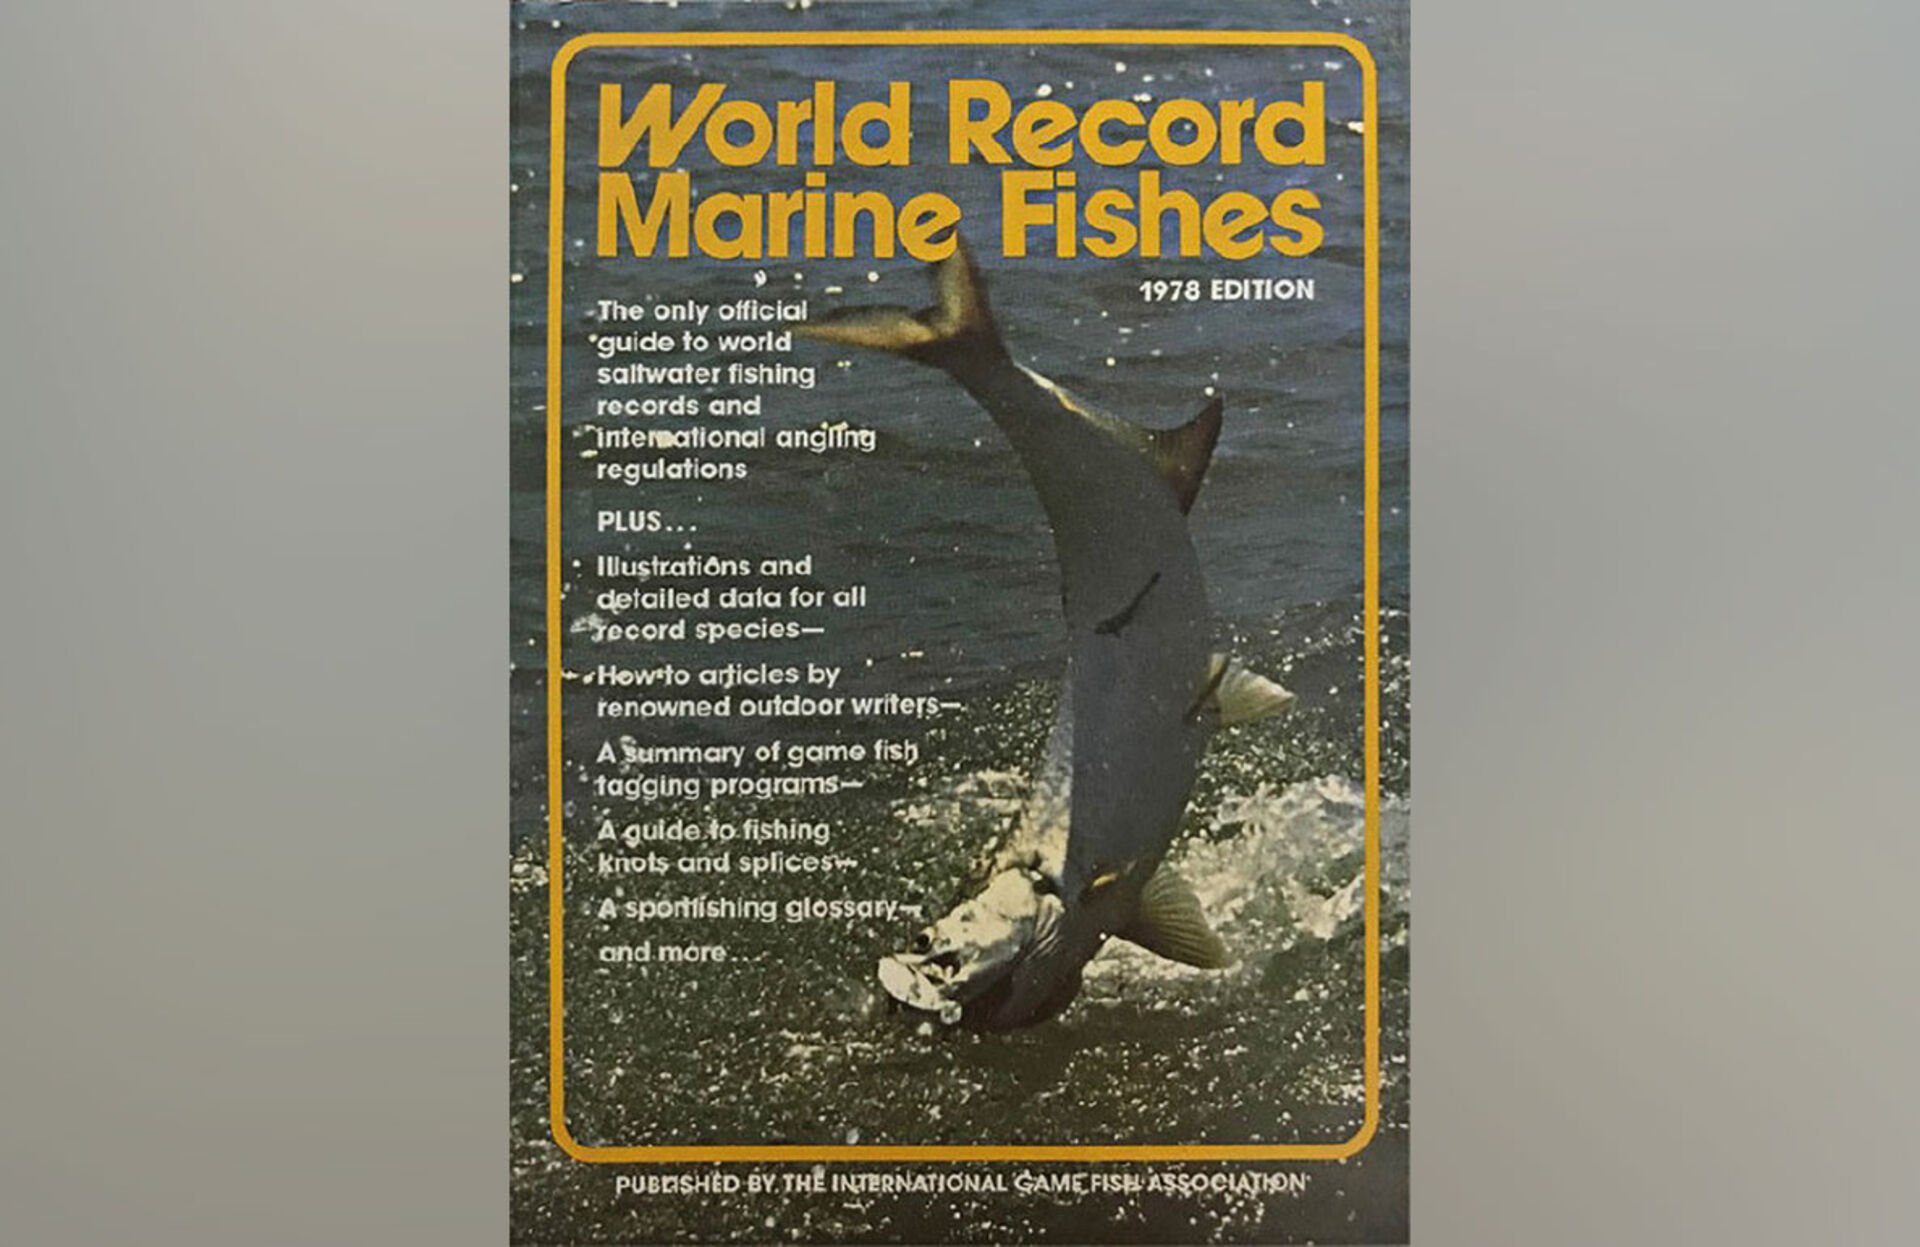  Das jährlich erscheinende Buch «Weltrekord-Meeresfische» war 1978 erstmals vollgestopft mit Farbfotos, Anzeigen und Leitartikeln, die von einigen der führenden Outdoor-Autoren der damaligen Zeit verfasst wurden. © IGFA  